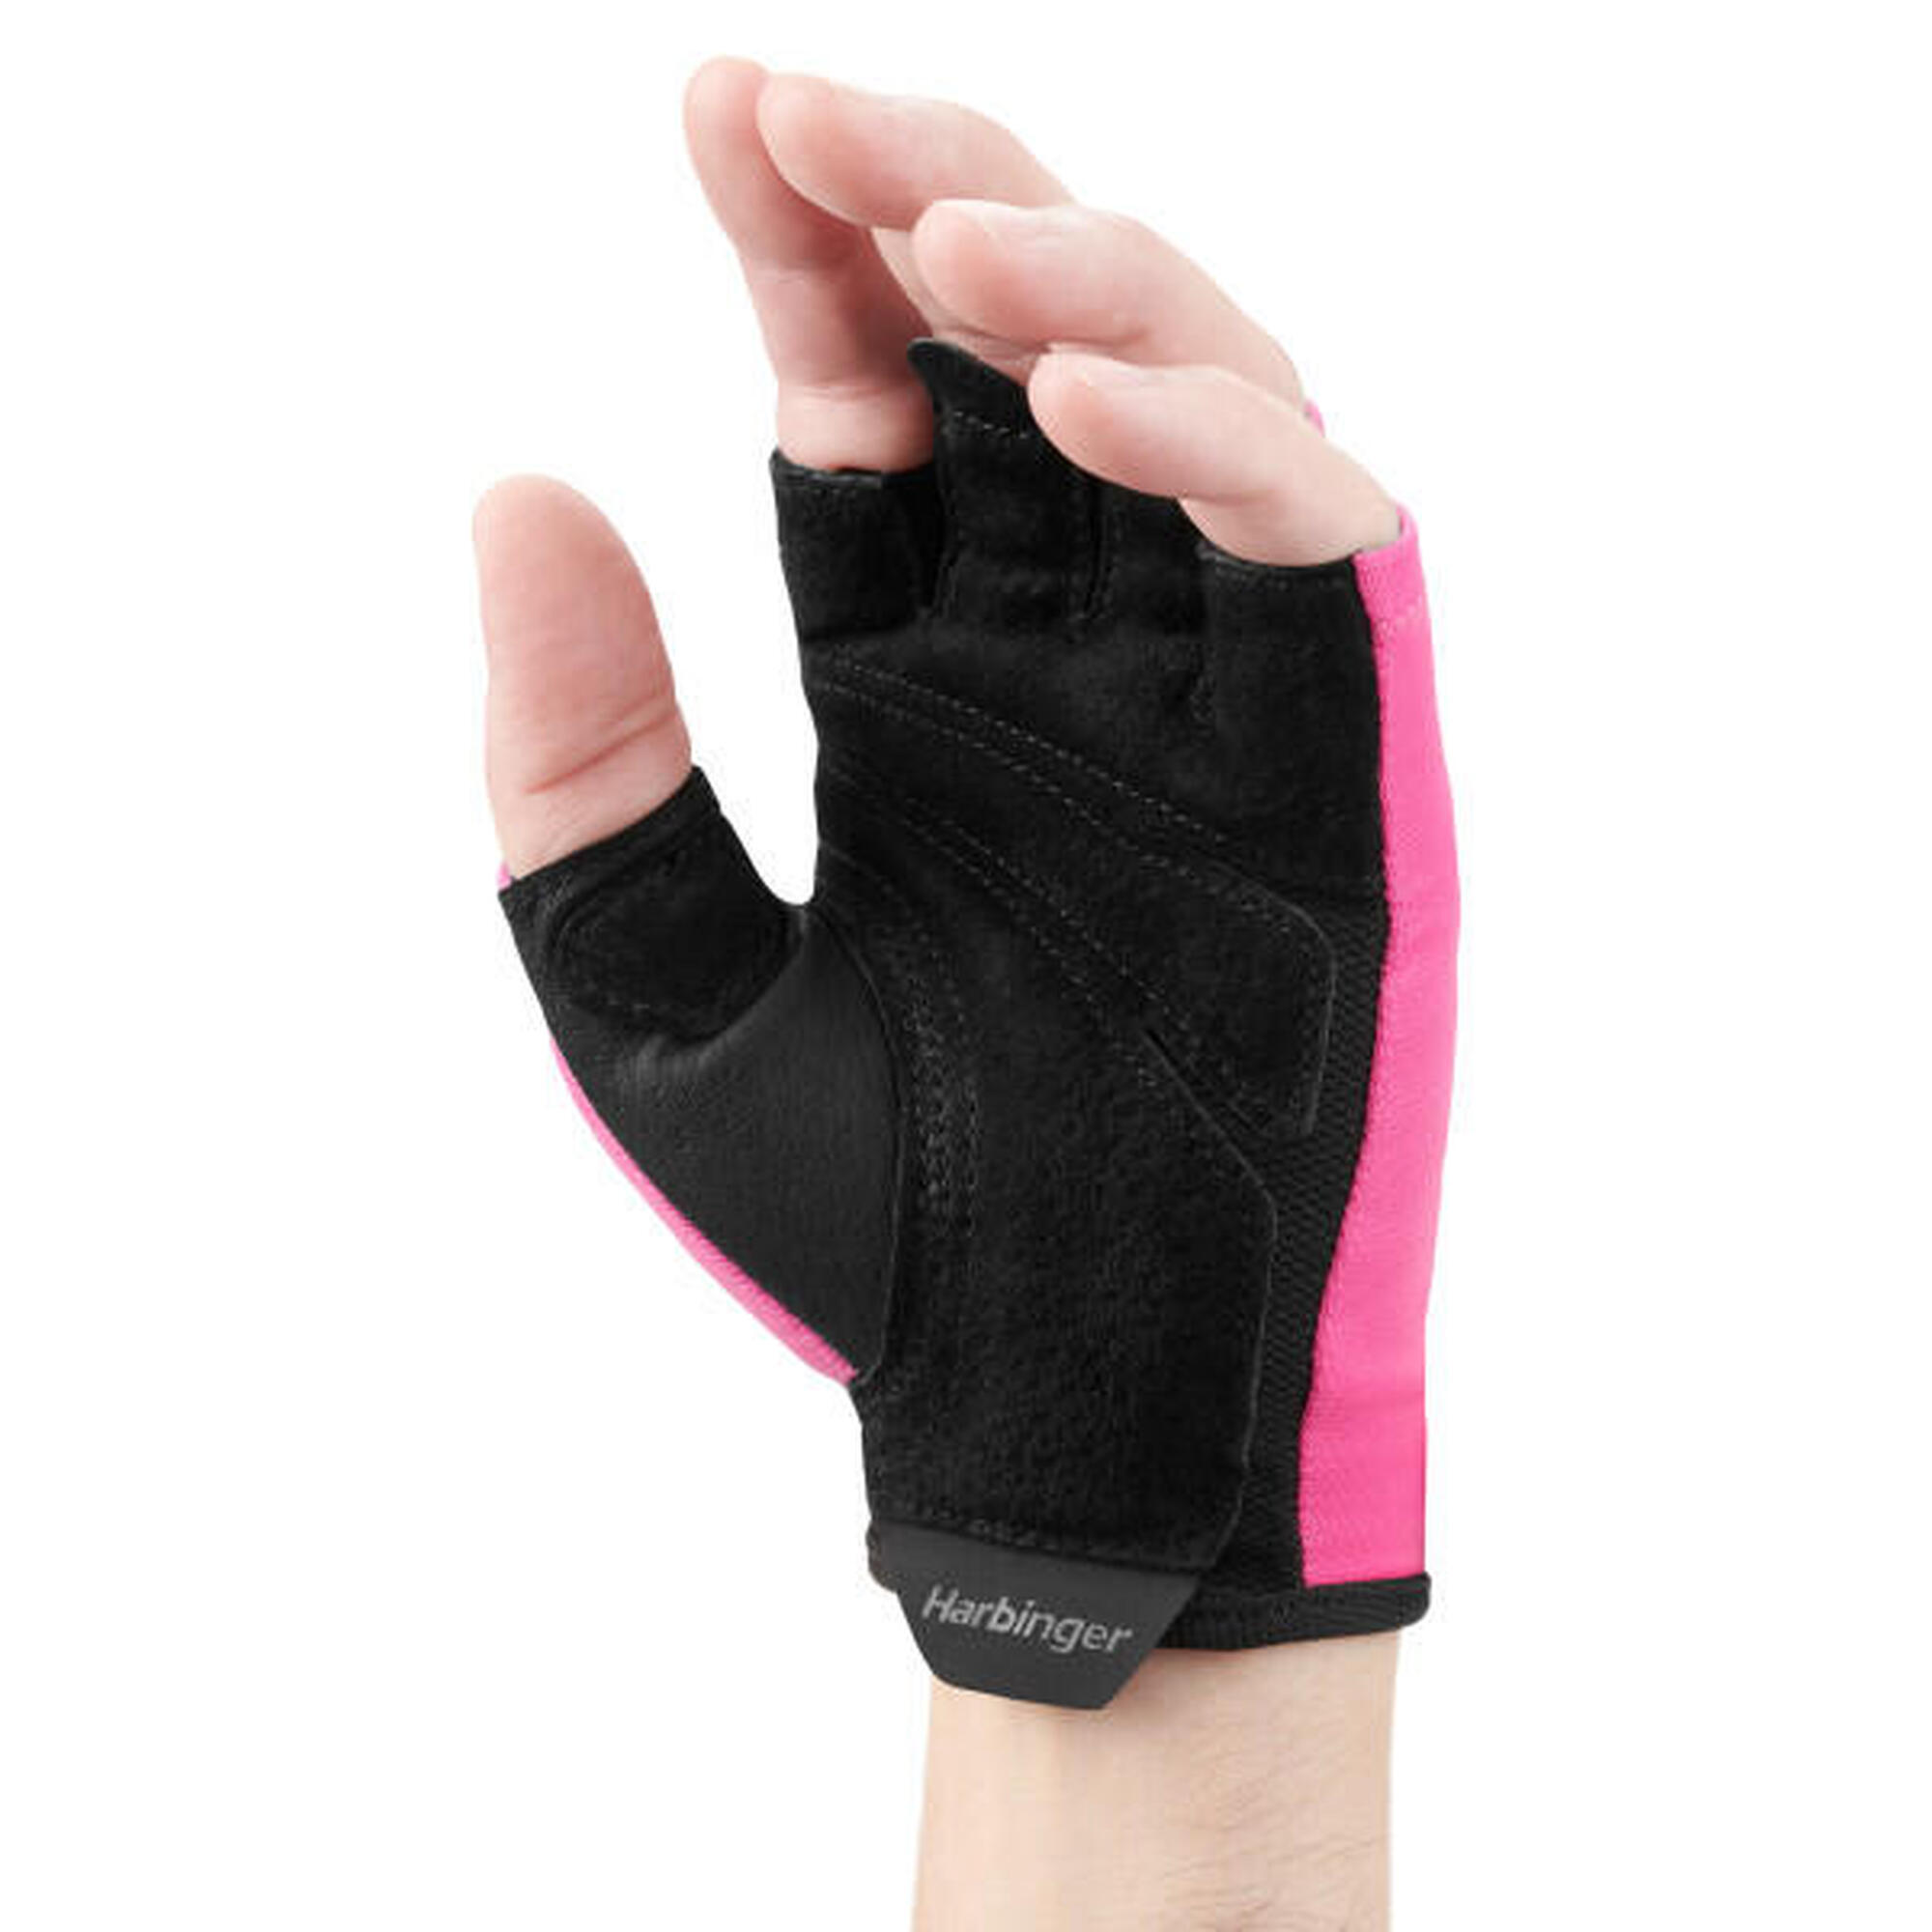 Harbinger dameshandschoen in roze voor ideaal trainingscomfort Maat S